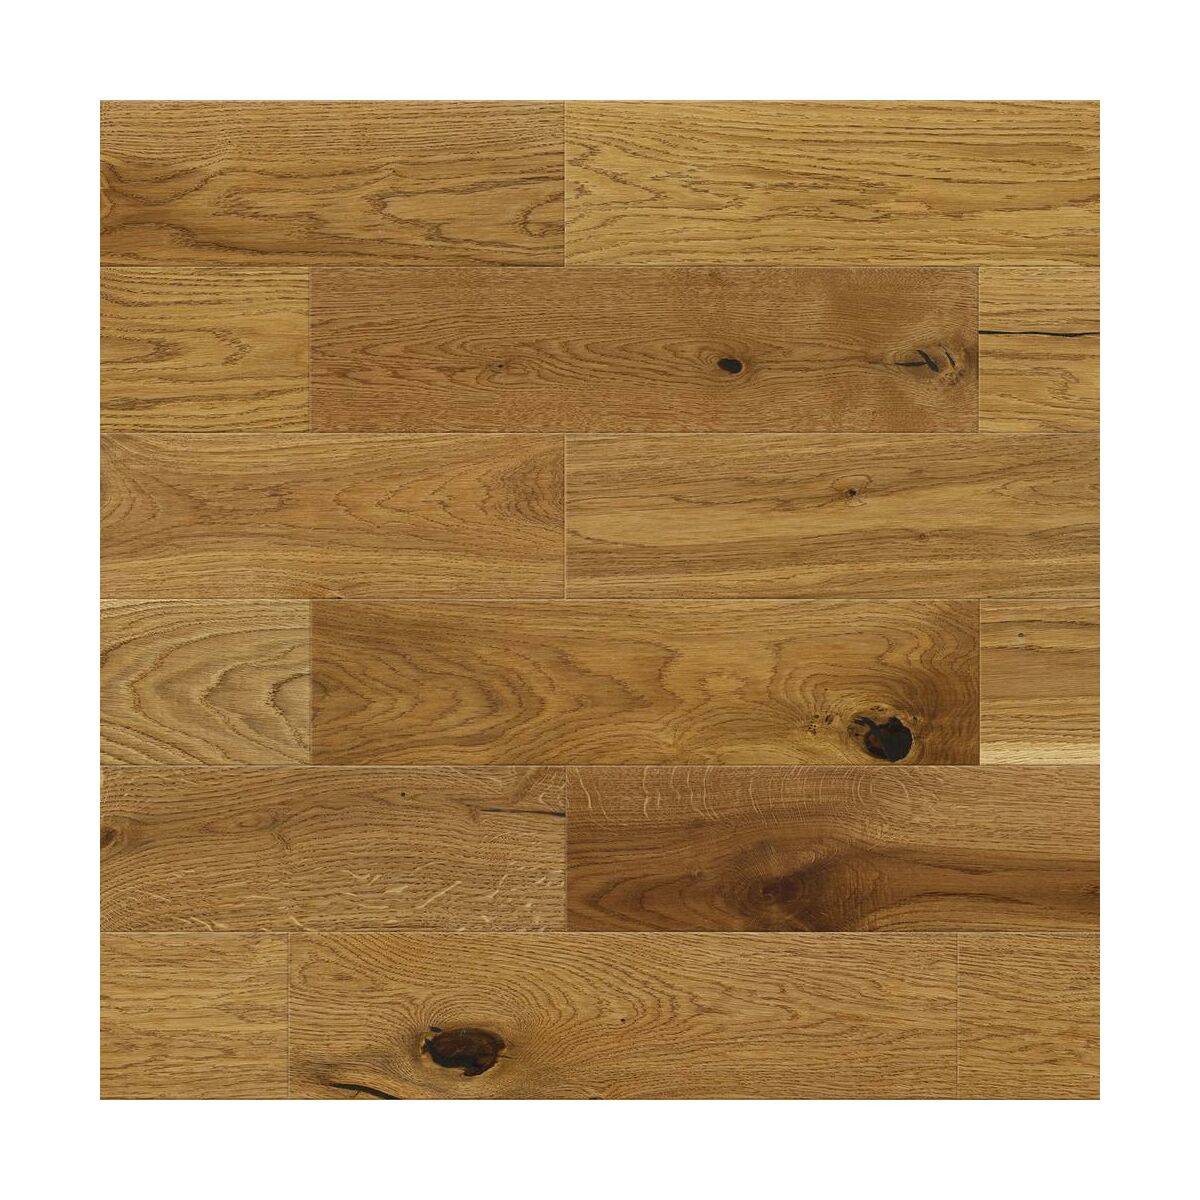 Podłoga drewniana deska trójwarstwowa Dąb 1-lamelowa lakier matowy gold 14 mm Barlinek